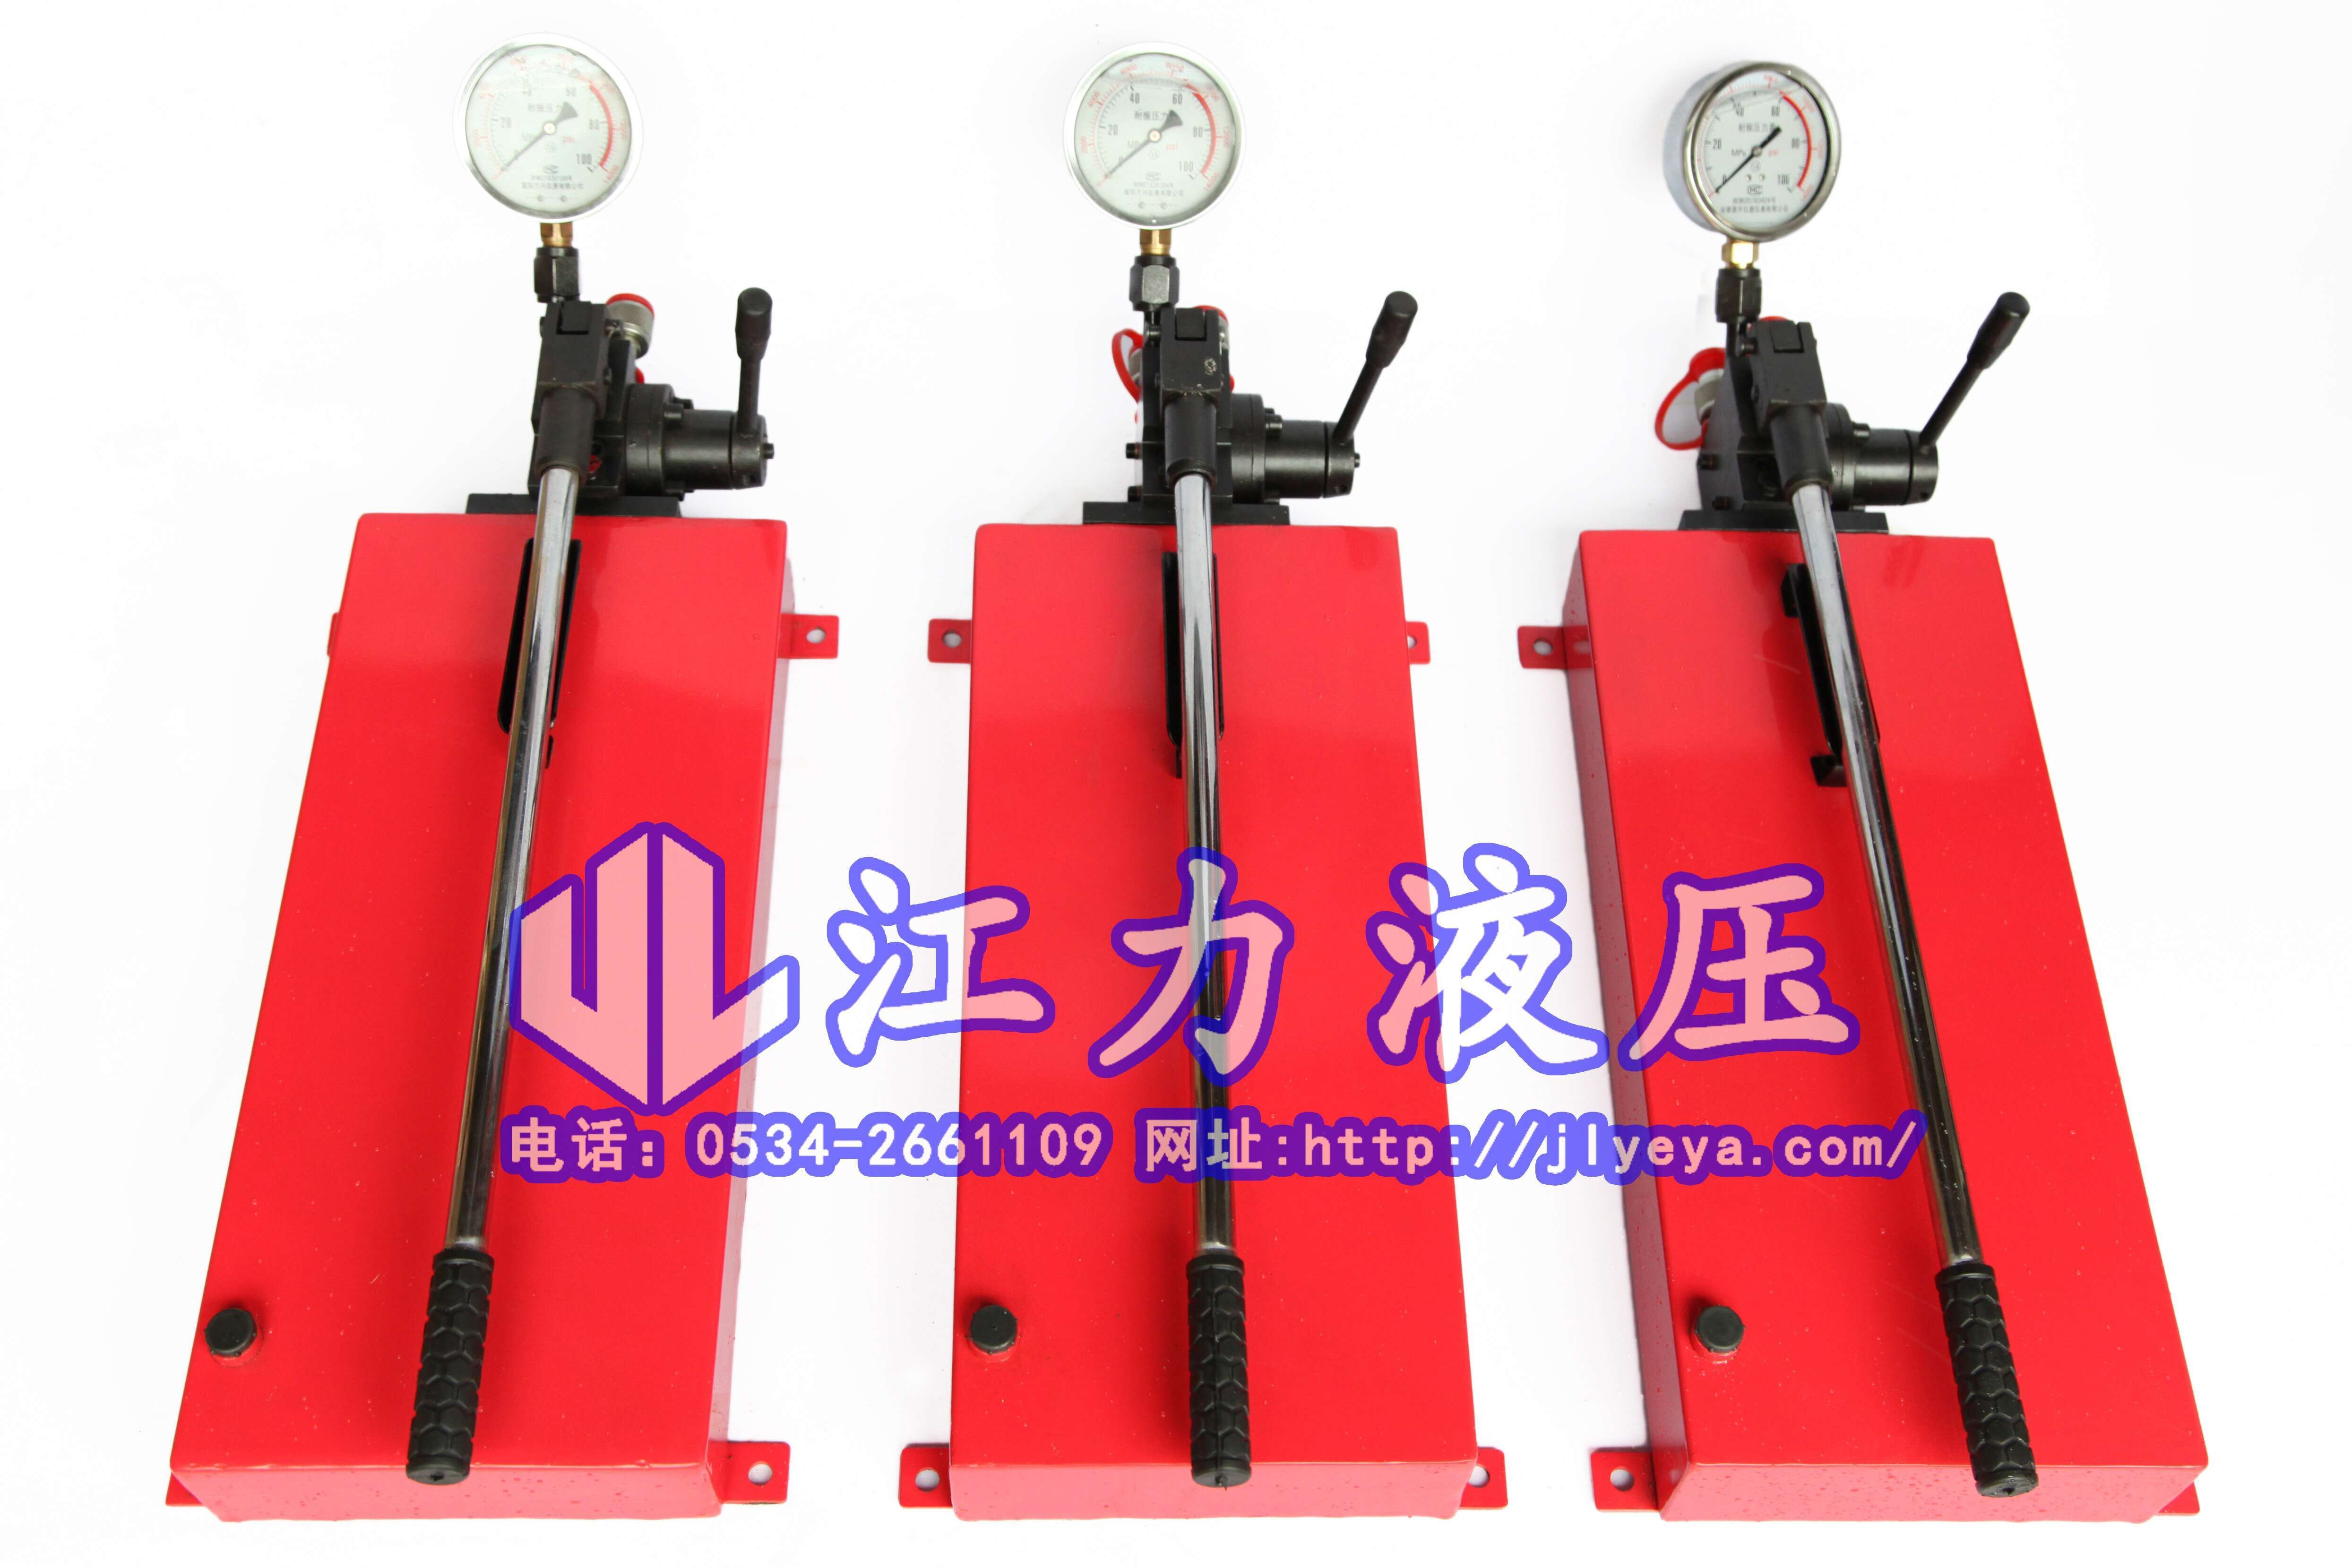 江力液压机具厂供应SYB-3手动泵|向用户提供提供安全、优质、高效的液压机具产品和服务